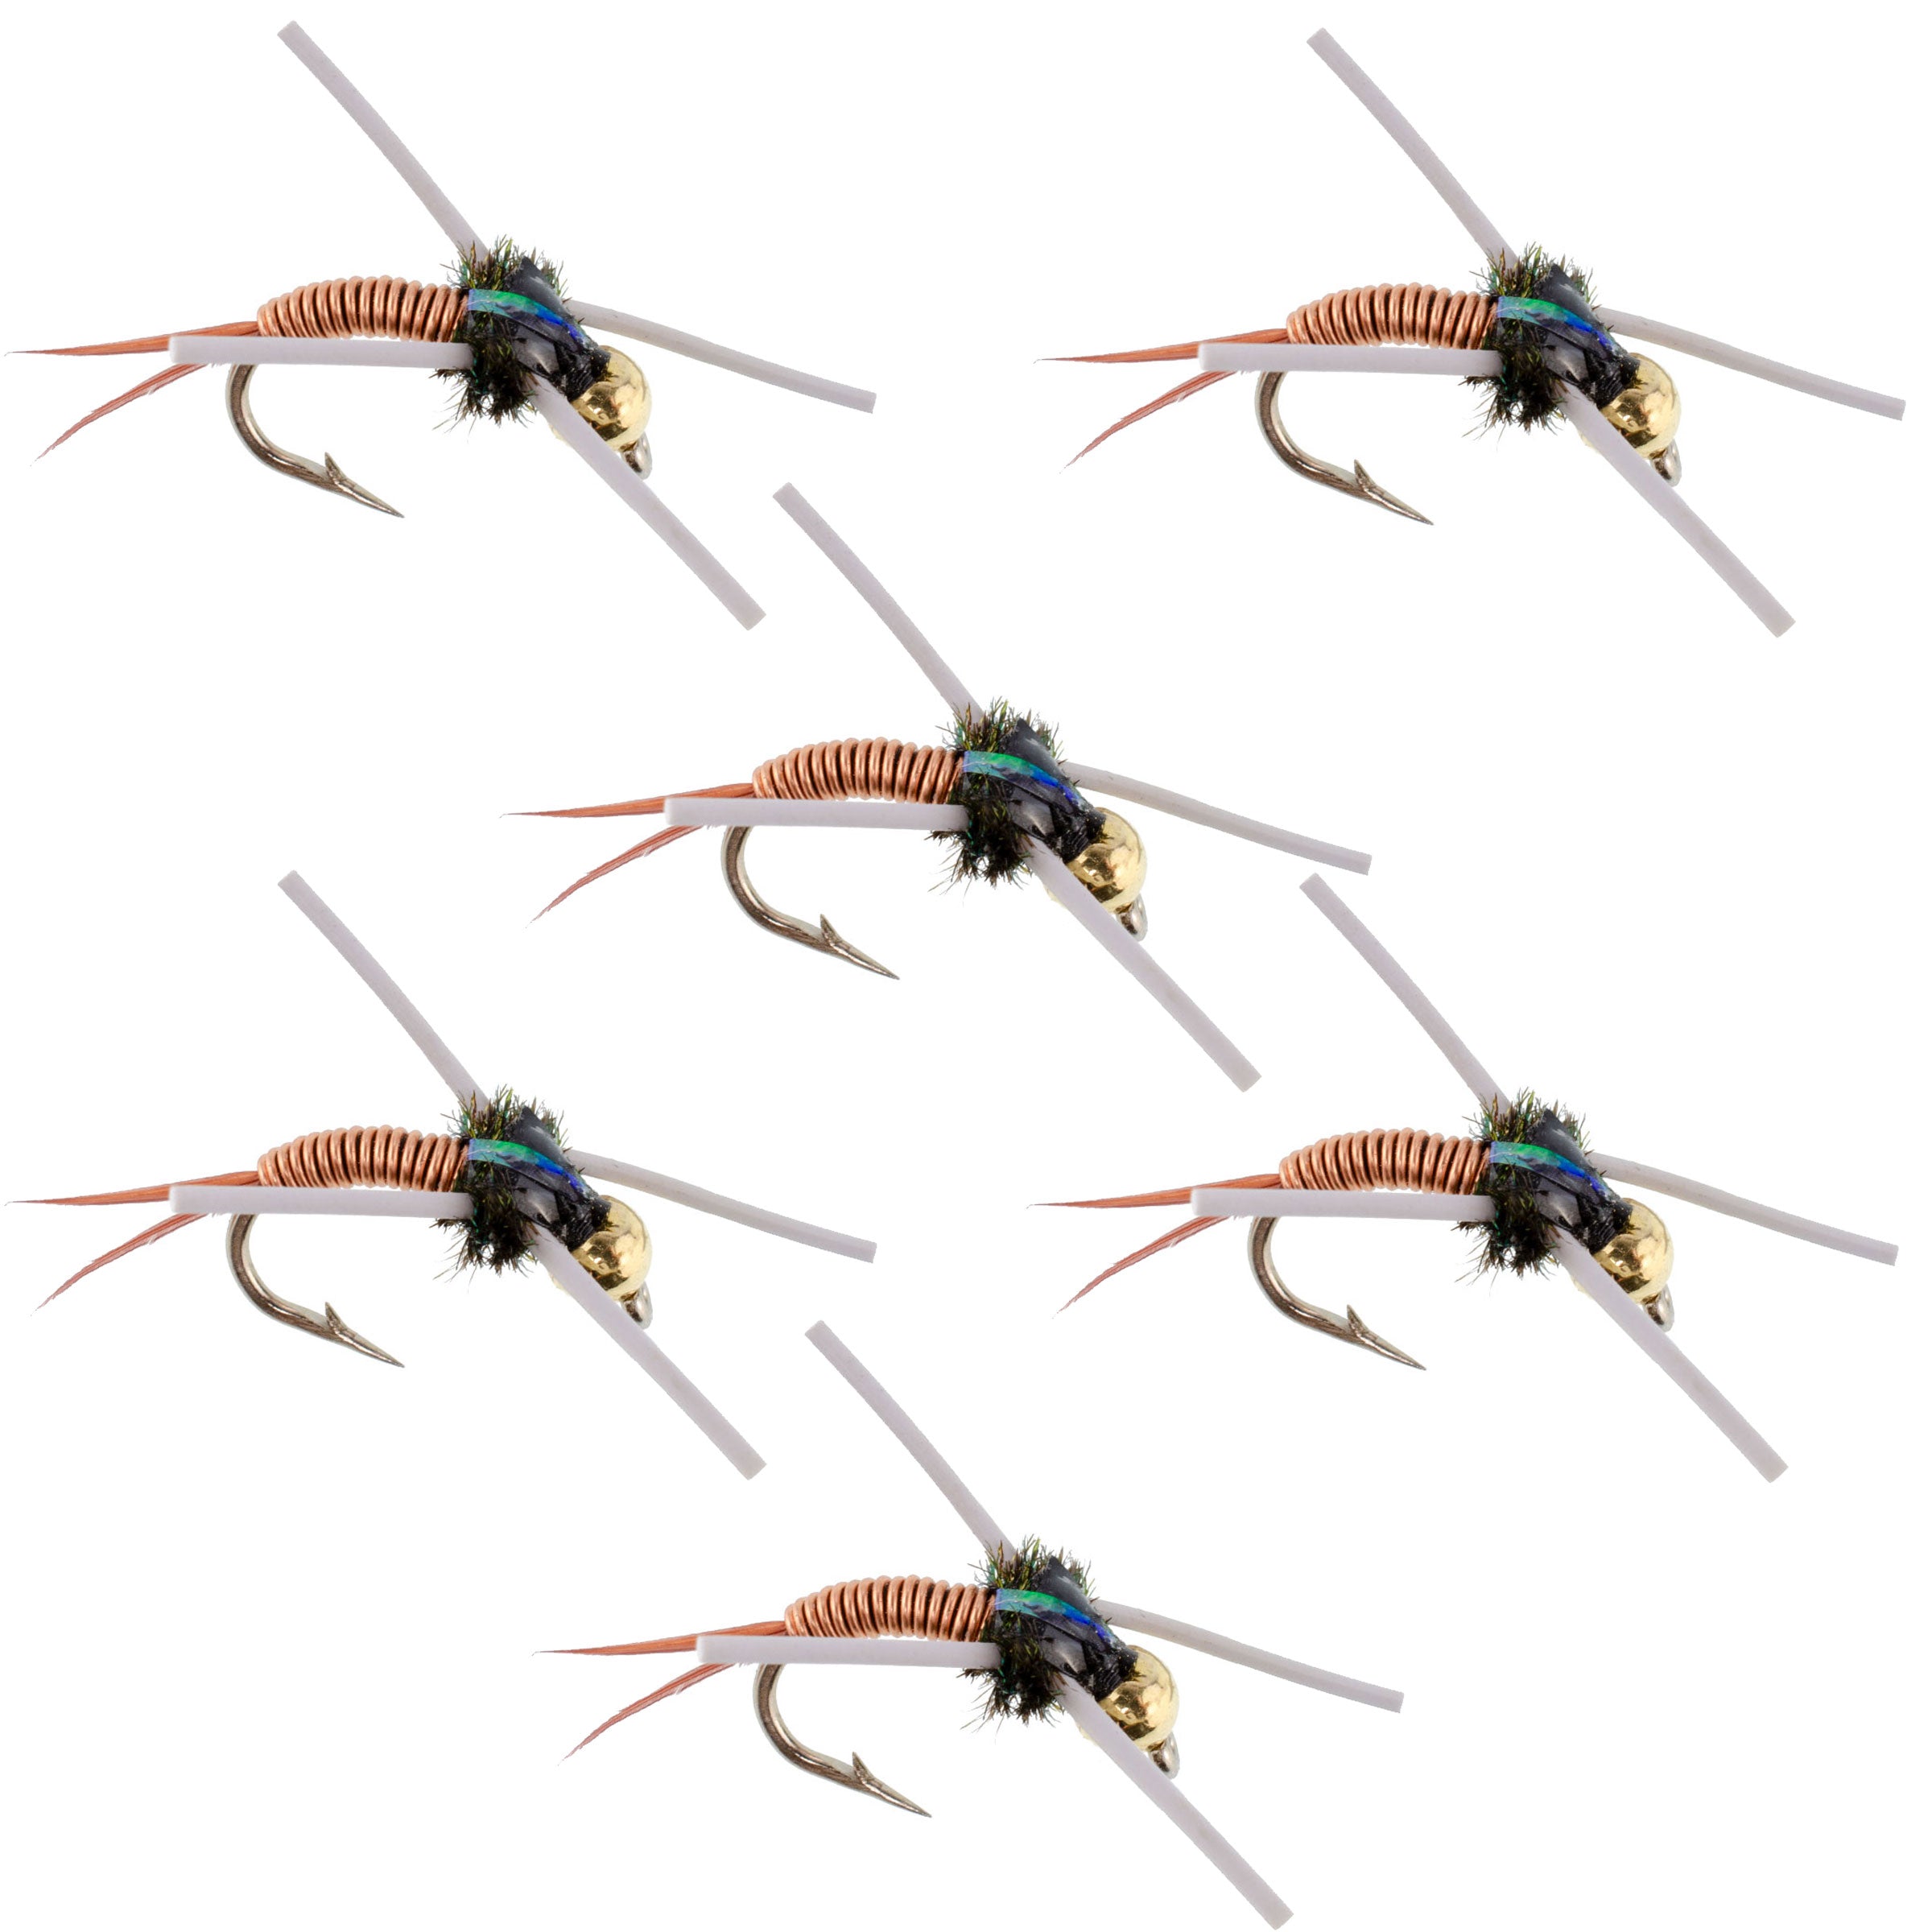 Tungsten Bead Head Rubber Legs Copper John Nymph Fly Fishing Flies - Set of 6 Flies Hook Size 14